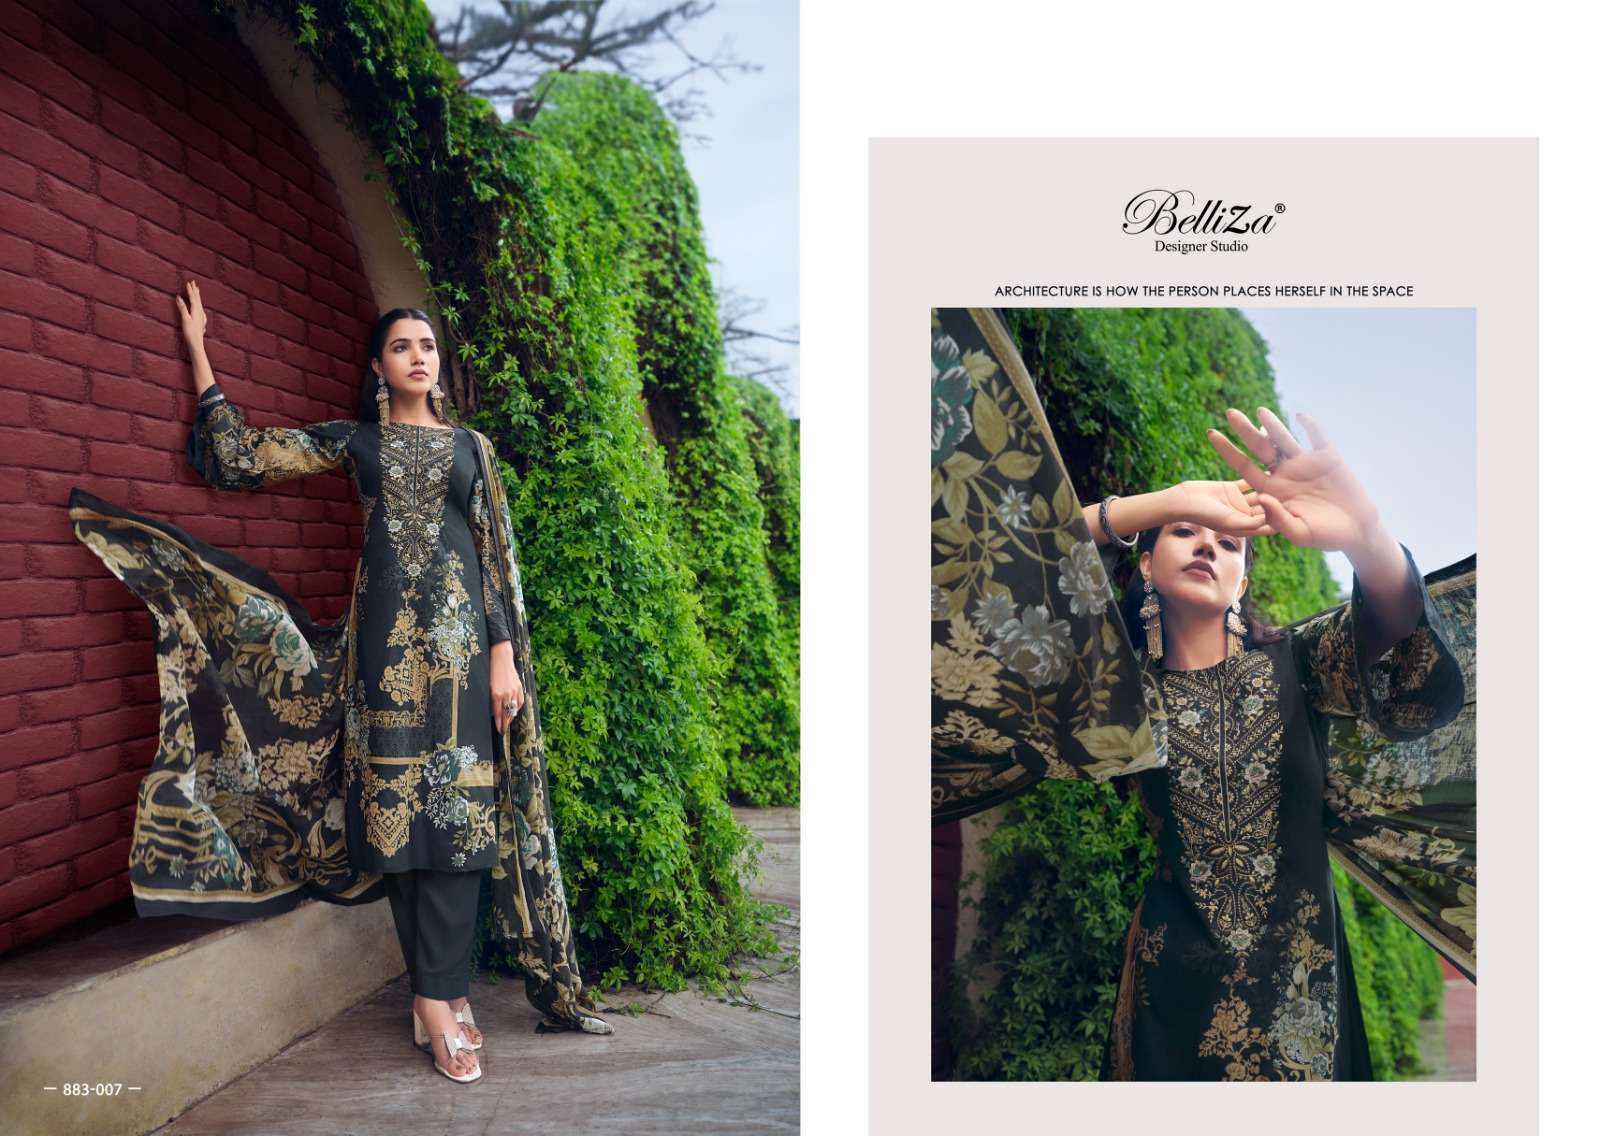 Belliza Naira Vol 37 Dress Material Wholesale catalog